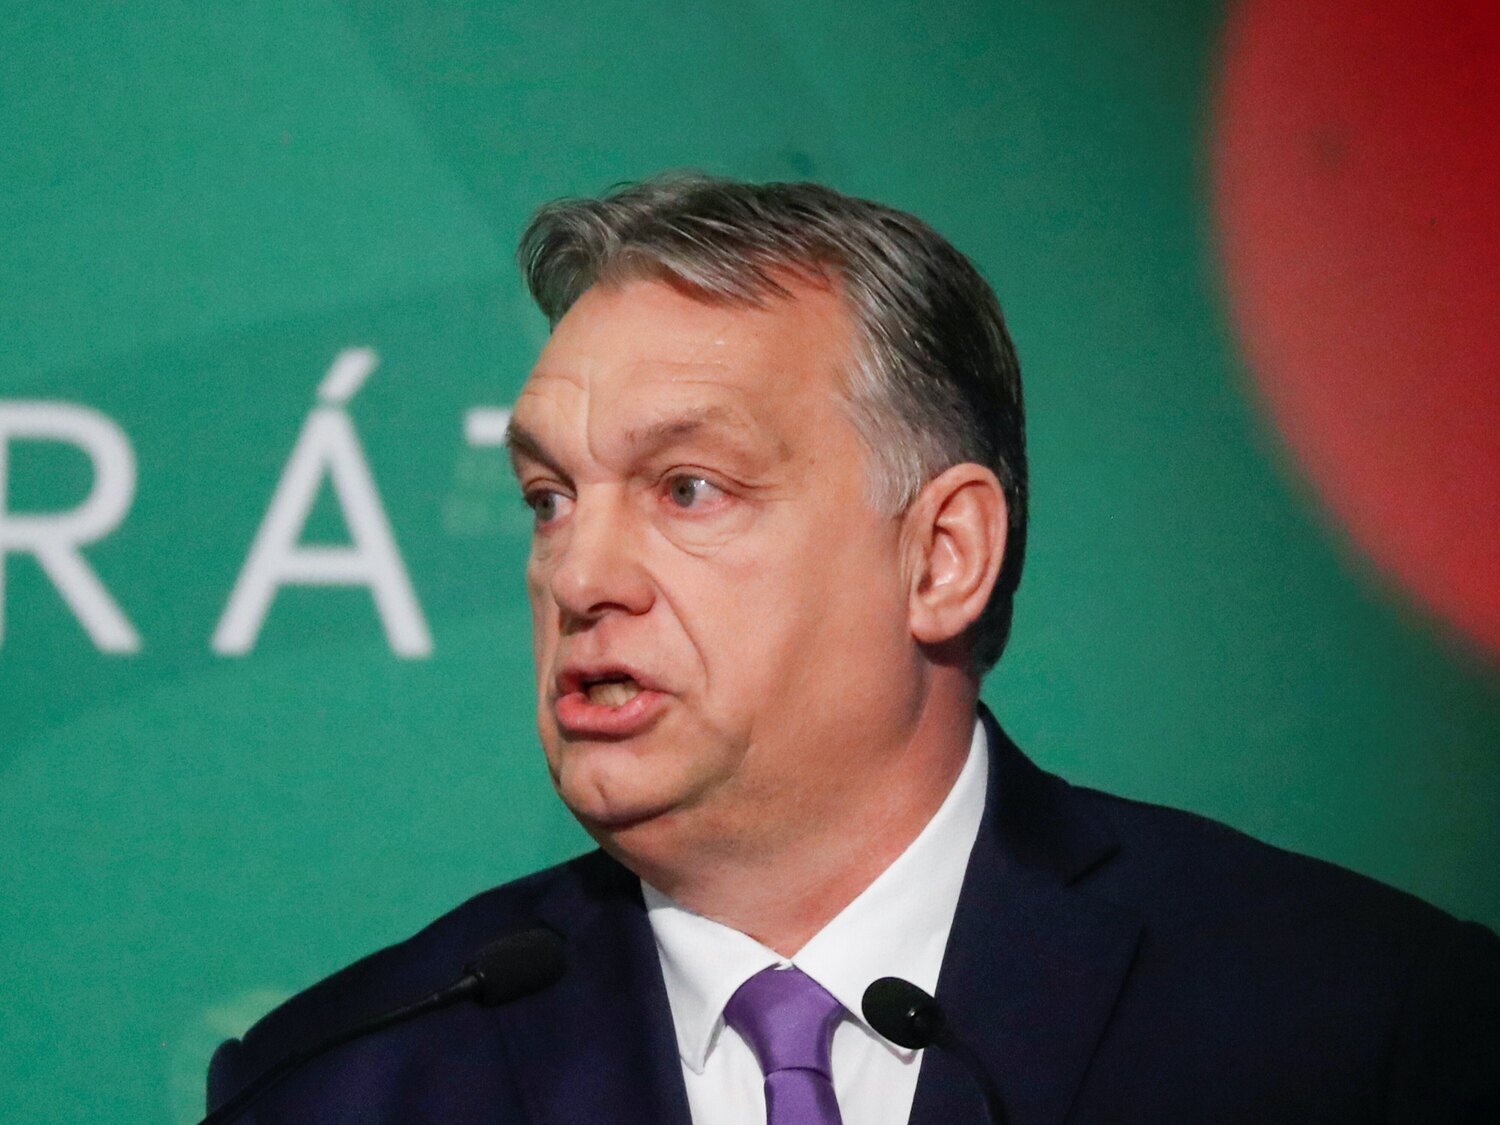 16 países de la UE piden activar la vía judicial contra Hungría por sus leyes antiLGTBI